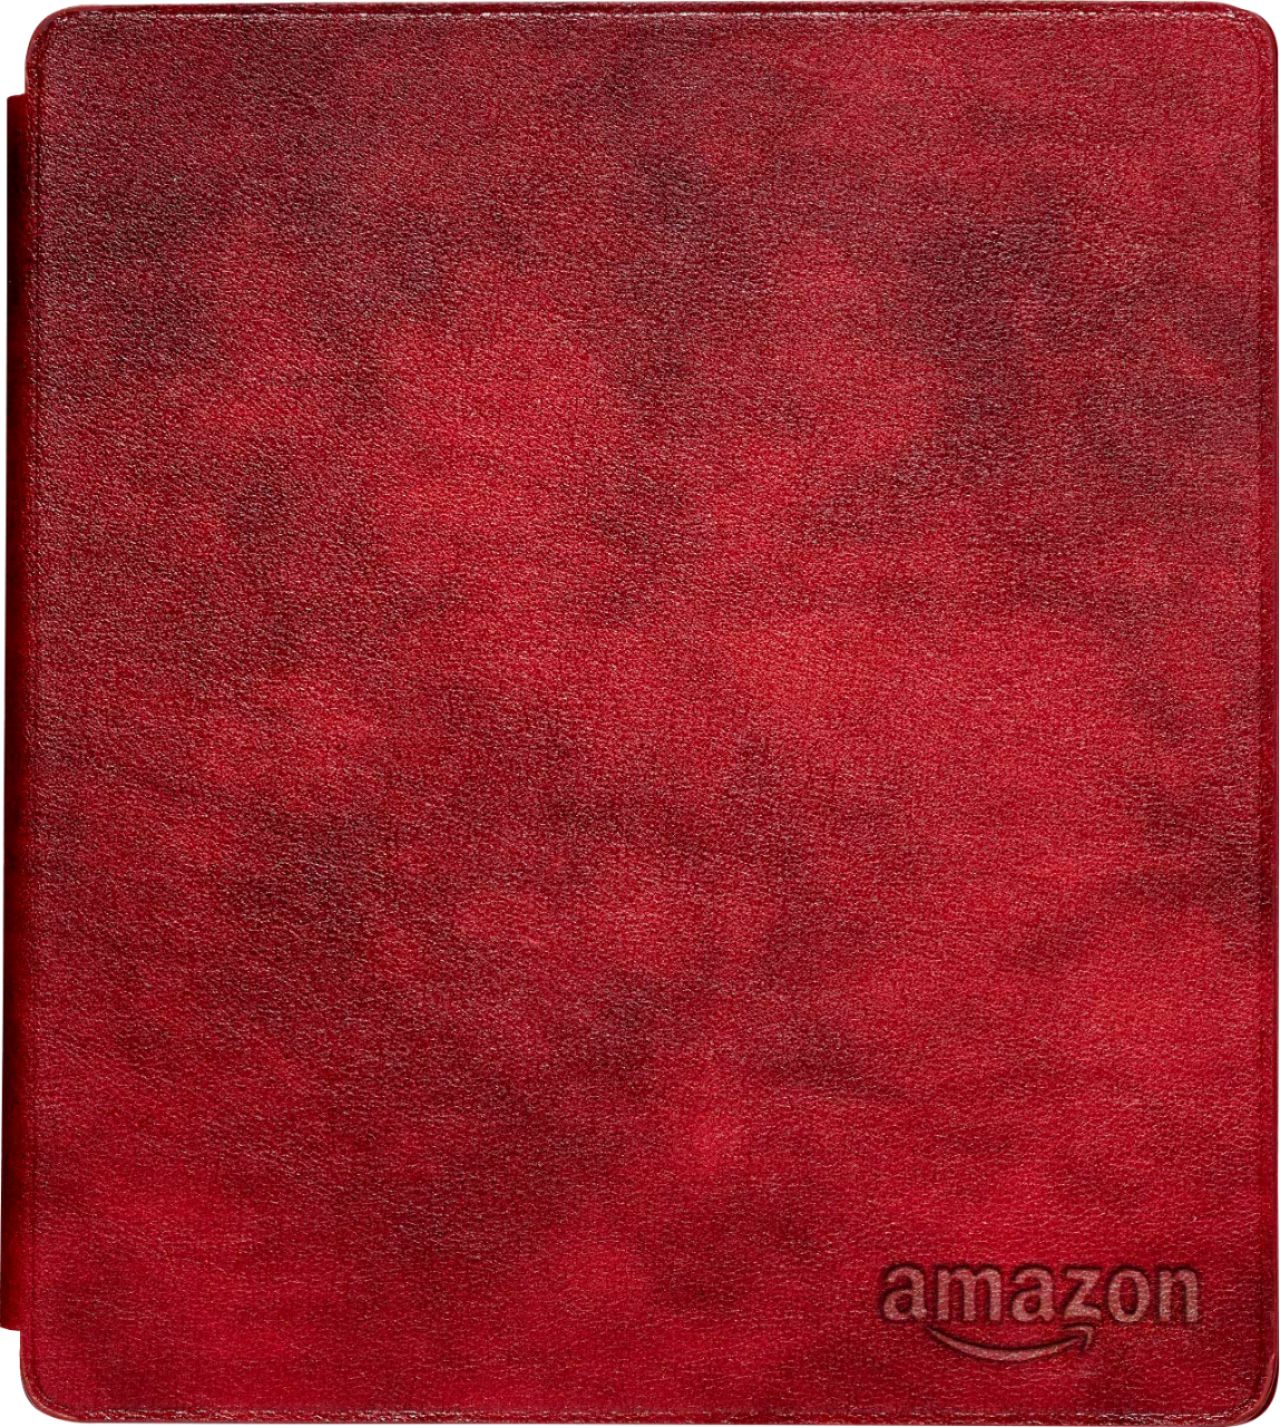 Amazon - Kindle Oasis Leather Cover - Merlot